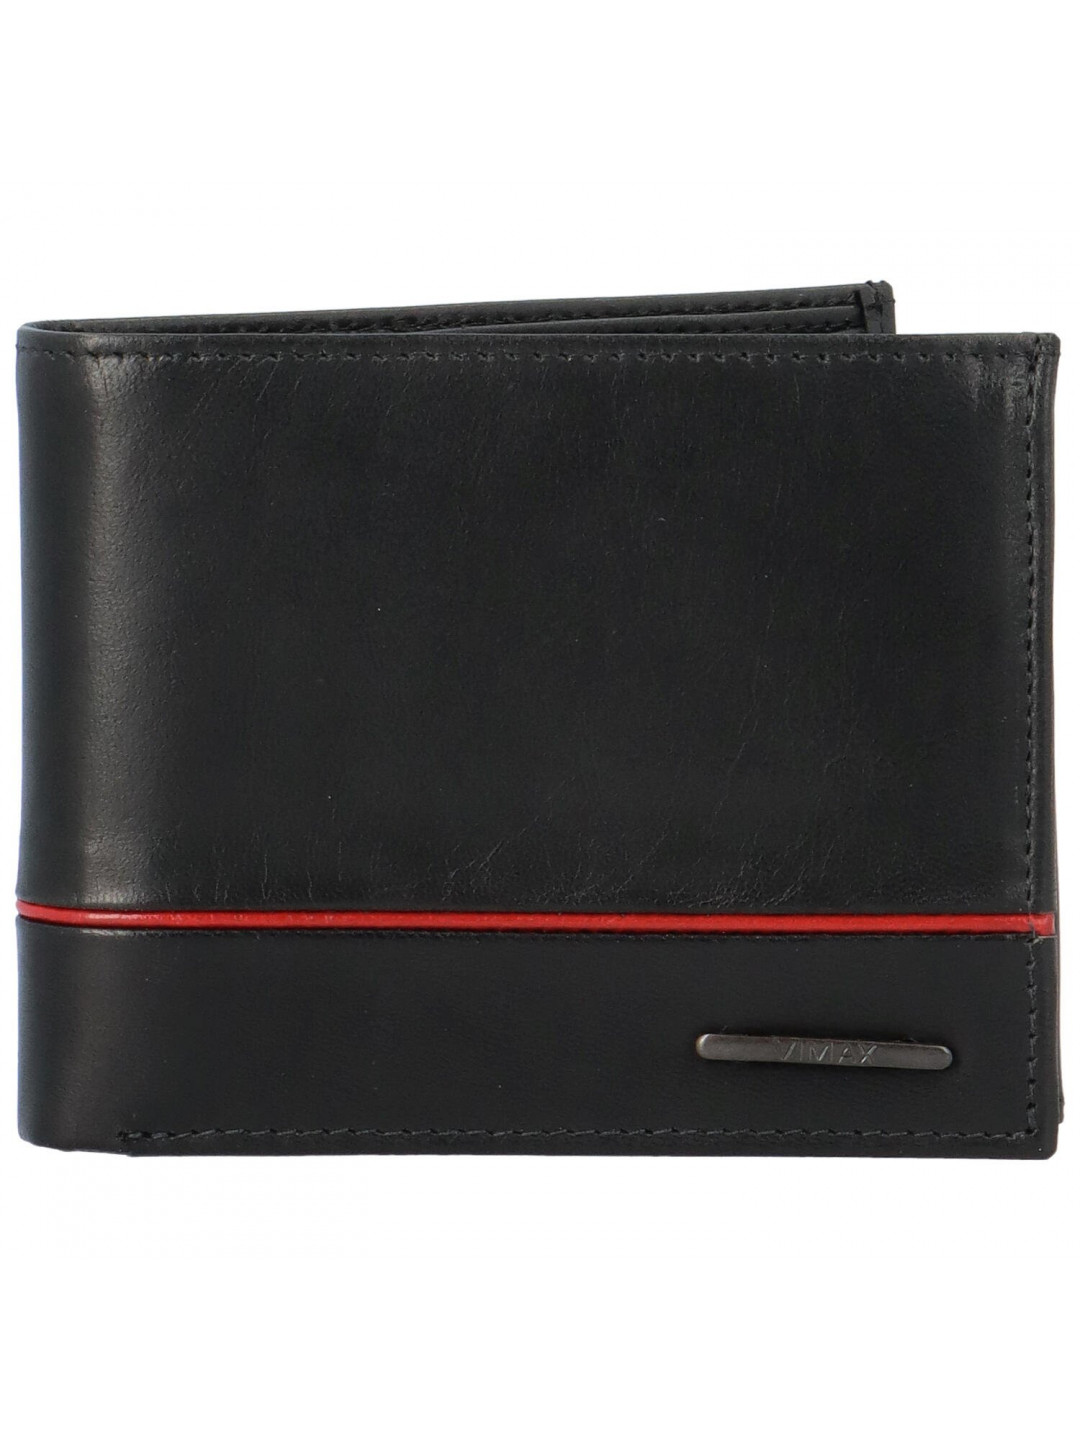 Pánská kožená peněženka černá – Vimax Willy